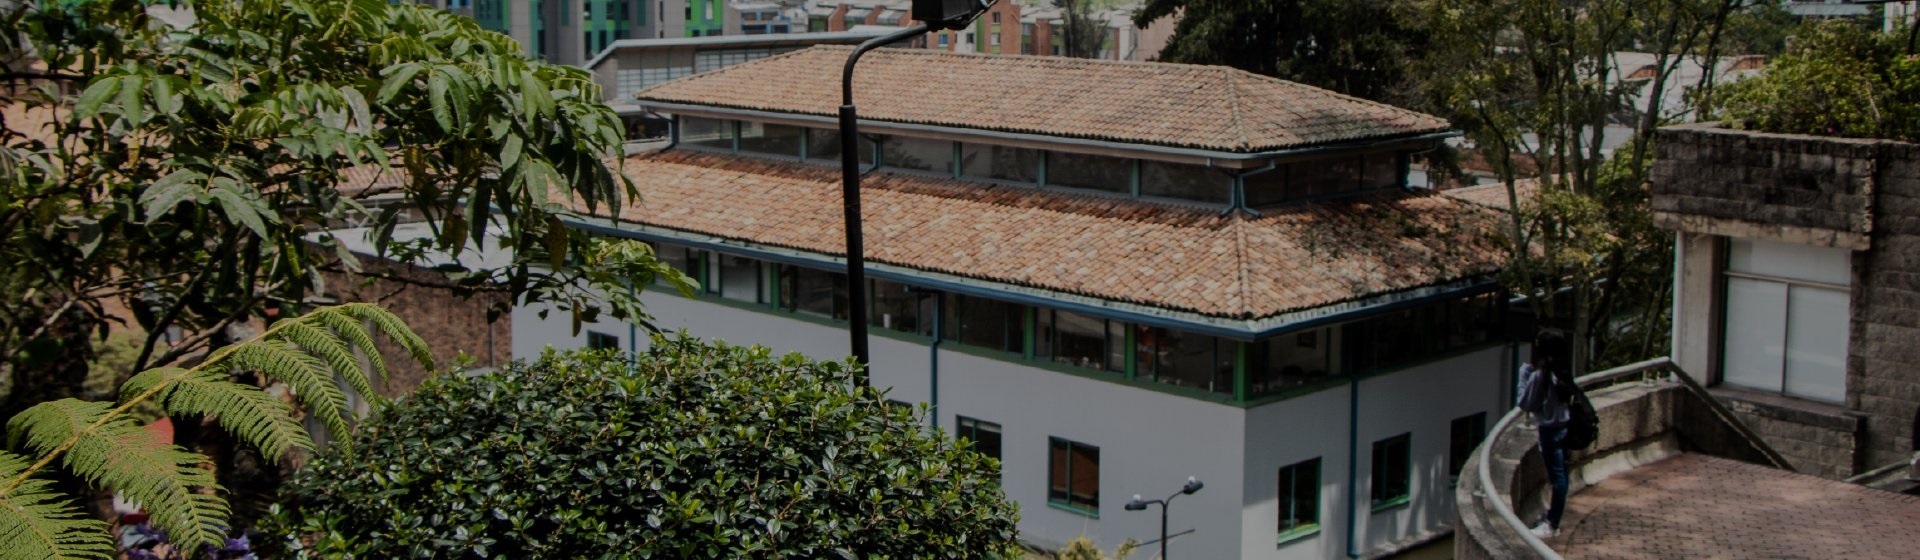 Edificio Rgc Facultad de Derecho de la Universidad de los Andes. Se ve parte de la fachada y del techo del edificio.